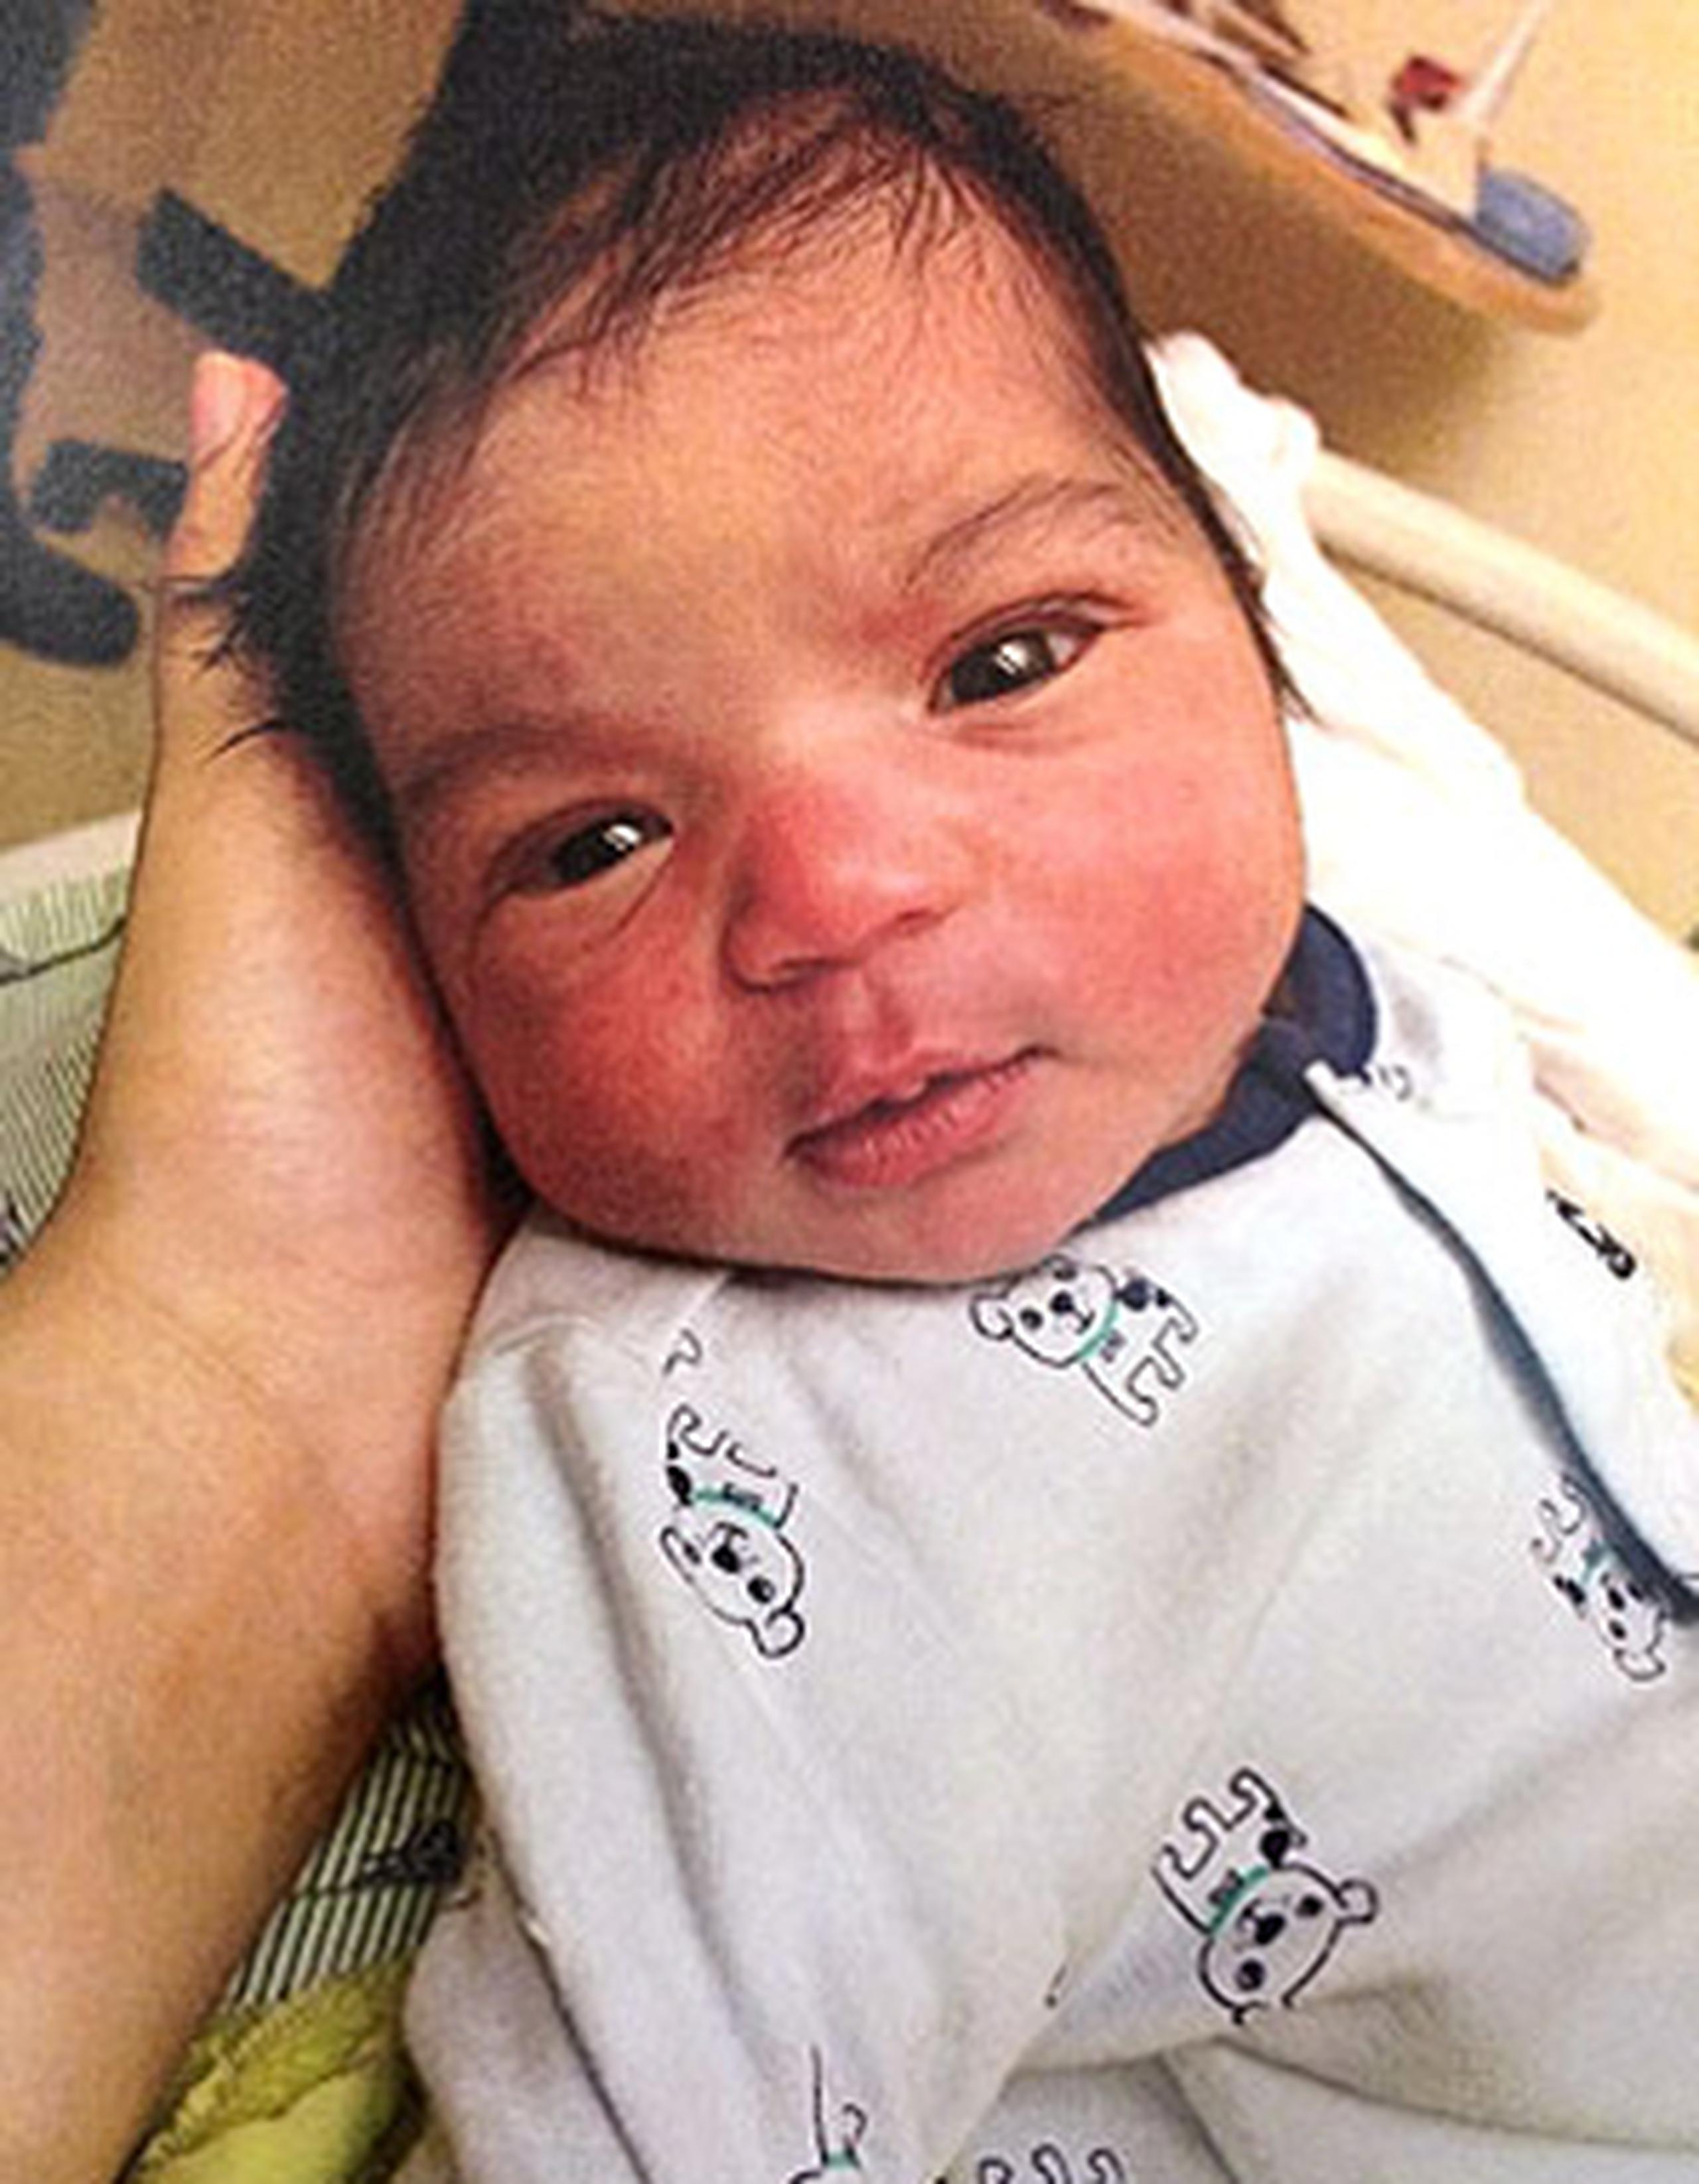 El infante de 6 días de nacido identificado como Kayden Powell, fue encontrado cerca de las 10:15 a.m. de hoy afuera de una estación de gasolina en West Branch.